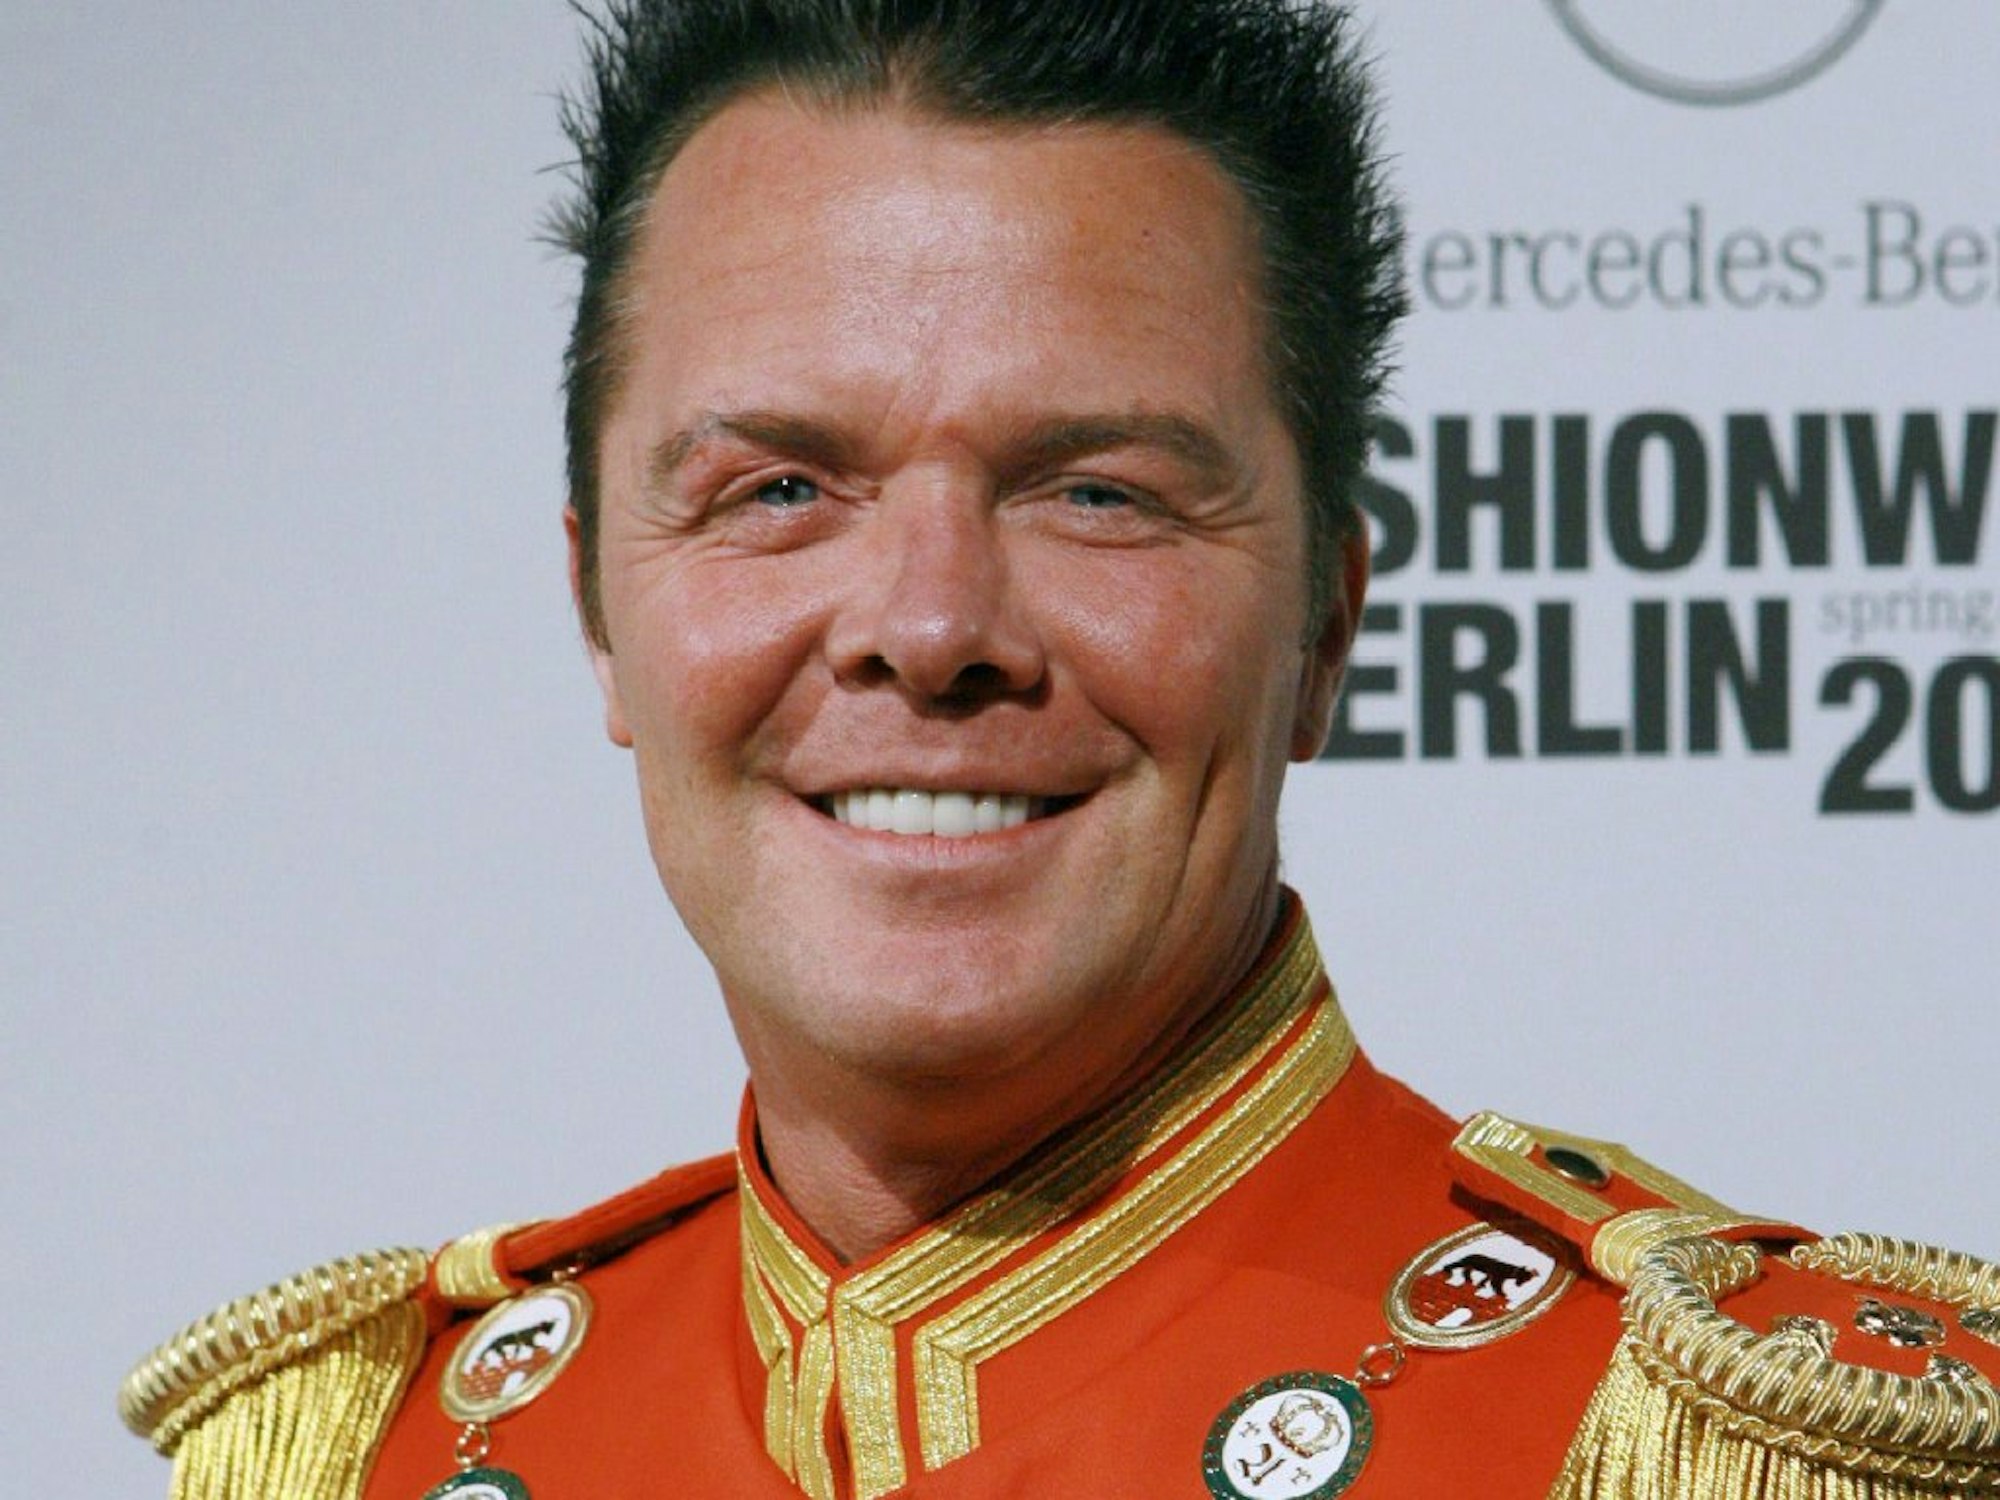 Prinz Marcus von Anhalt posiert mit einer roten Uniform.